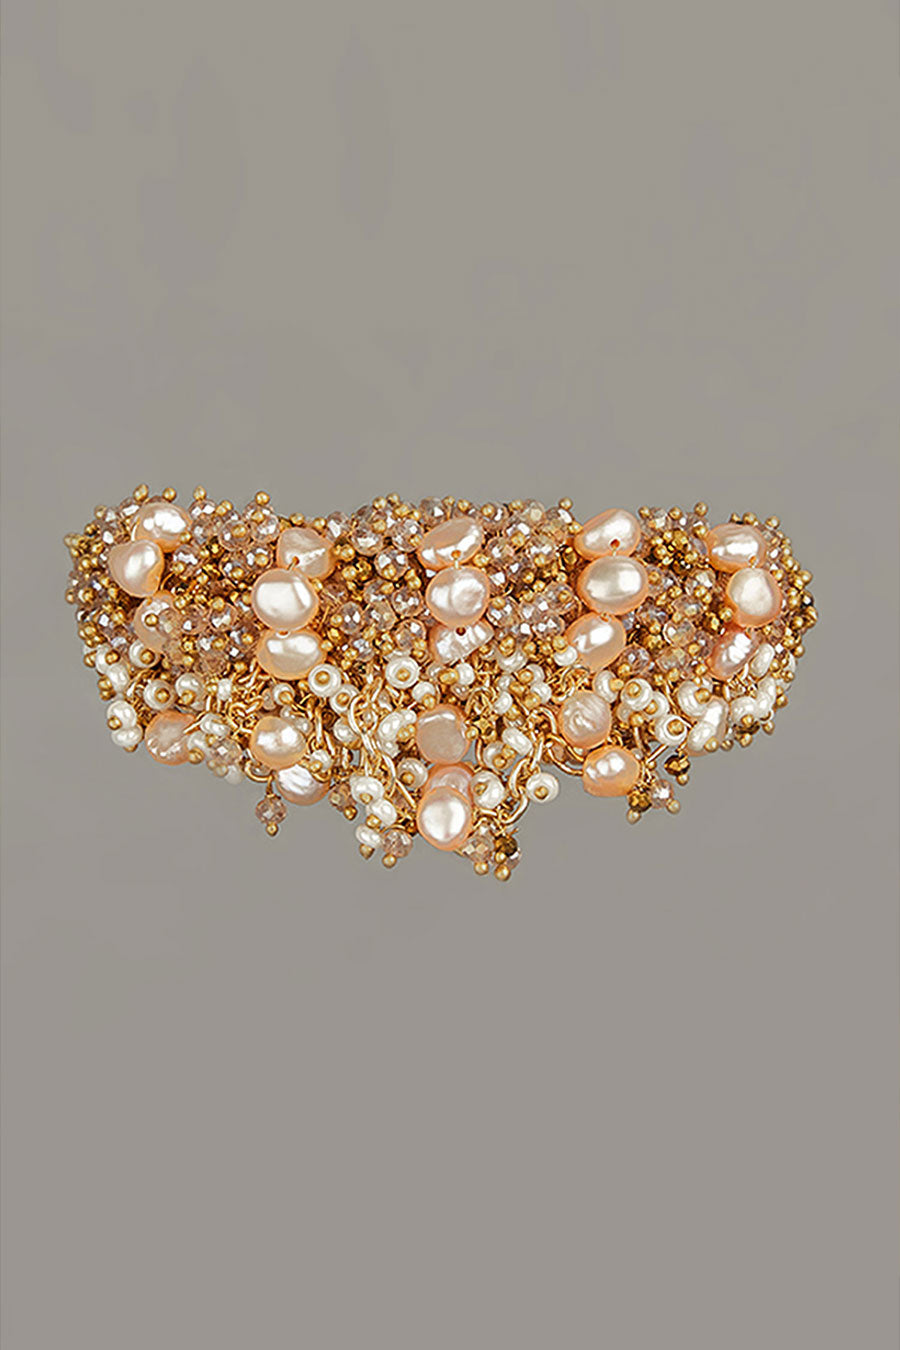 Peach Semi-Precious Stone Bracelet